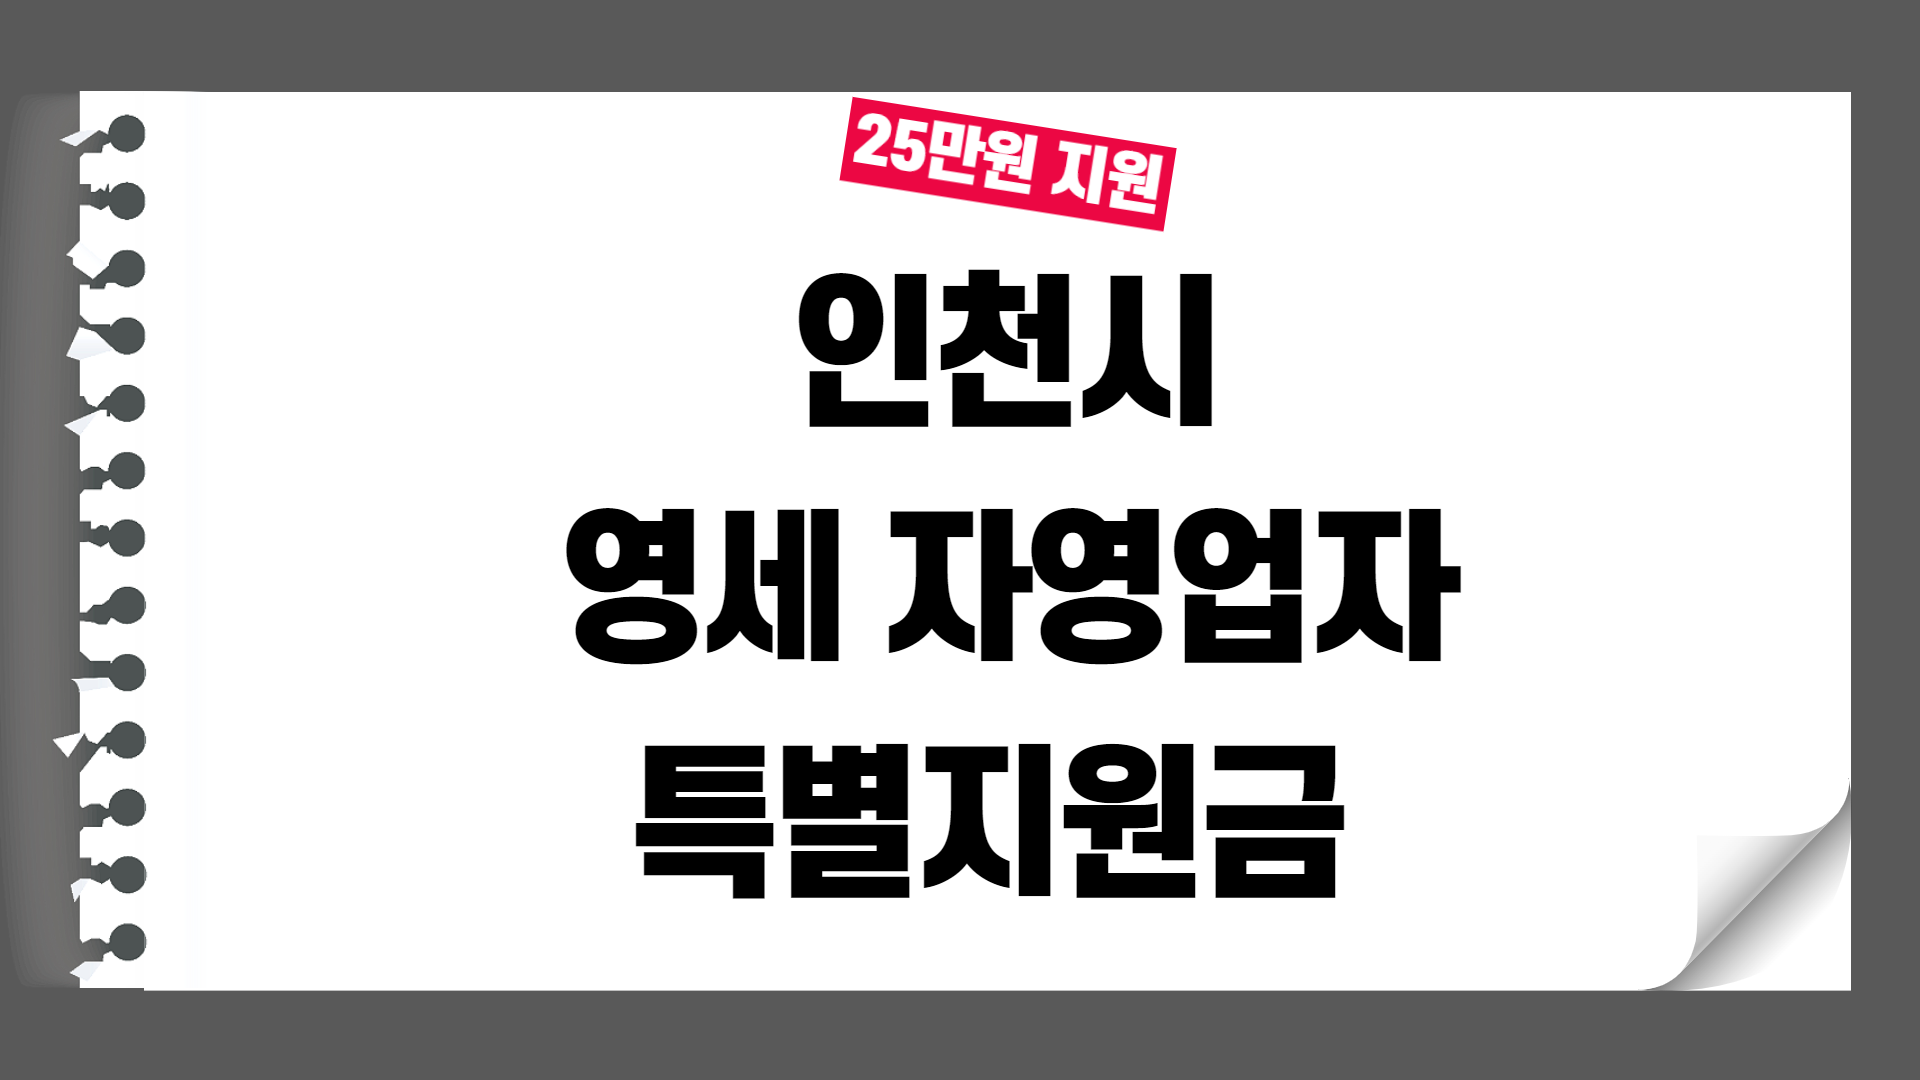 인천 영세 자영업자 특별지원금 25만원